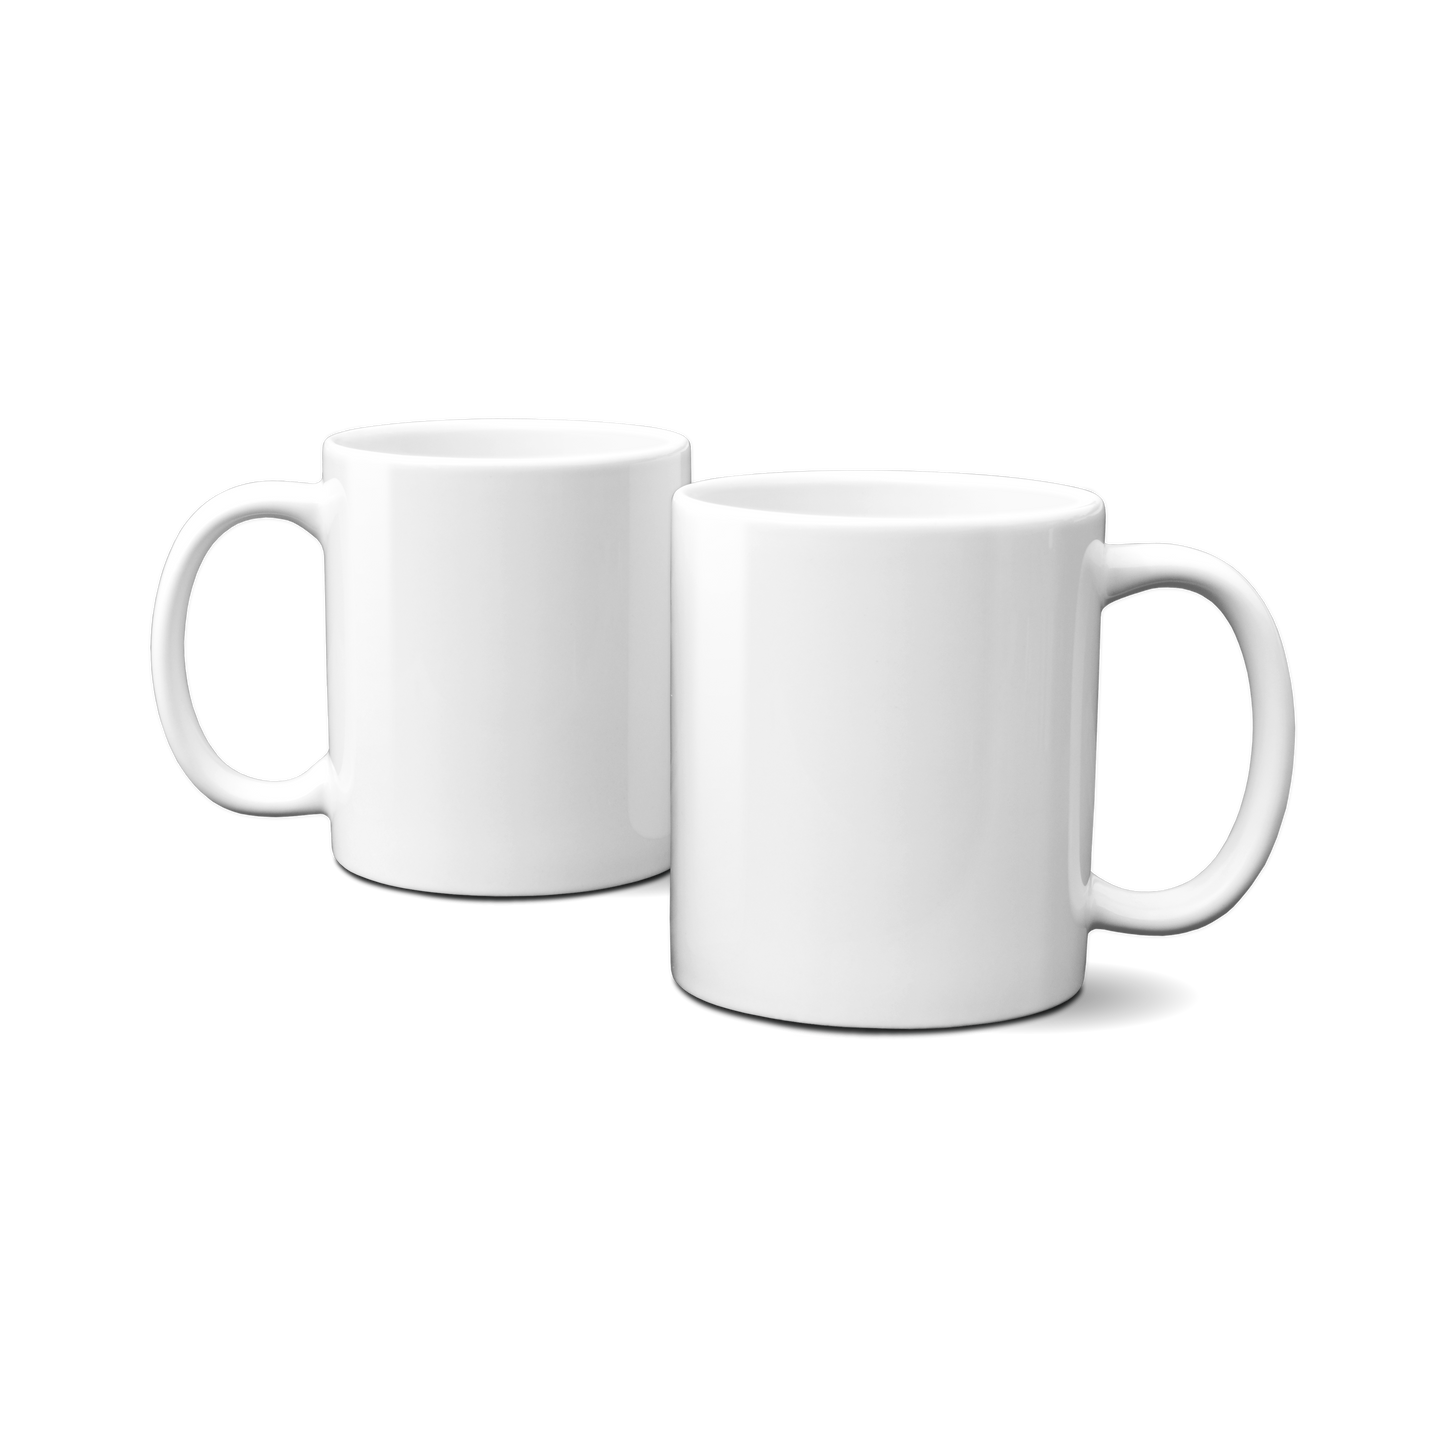 Hvid kaffekop/krus med eget design - 330ml